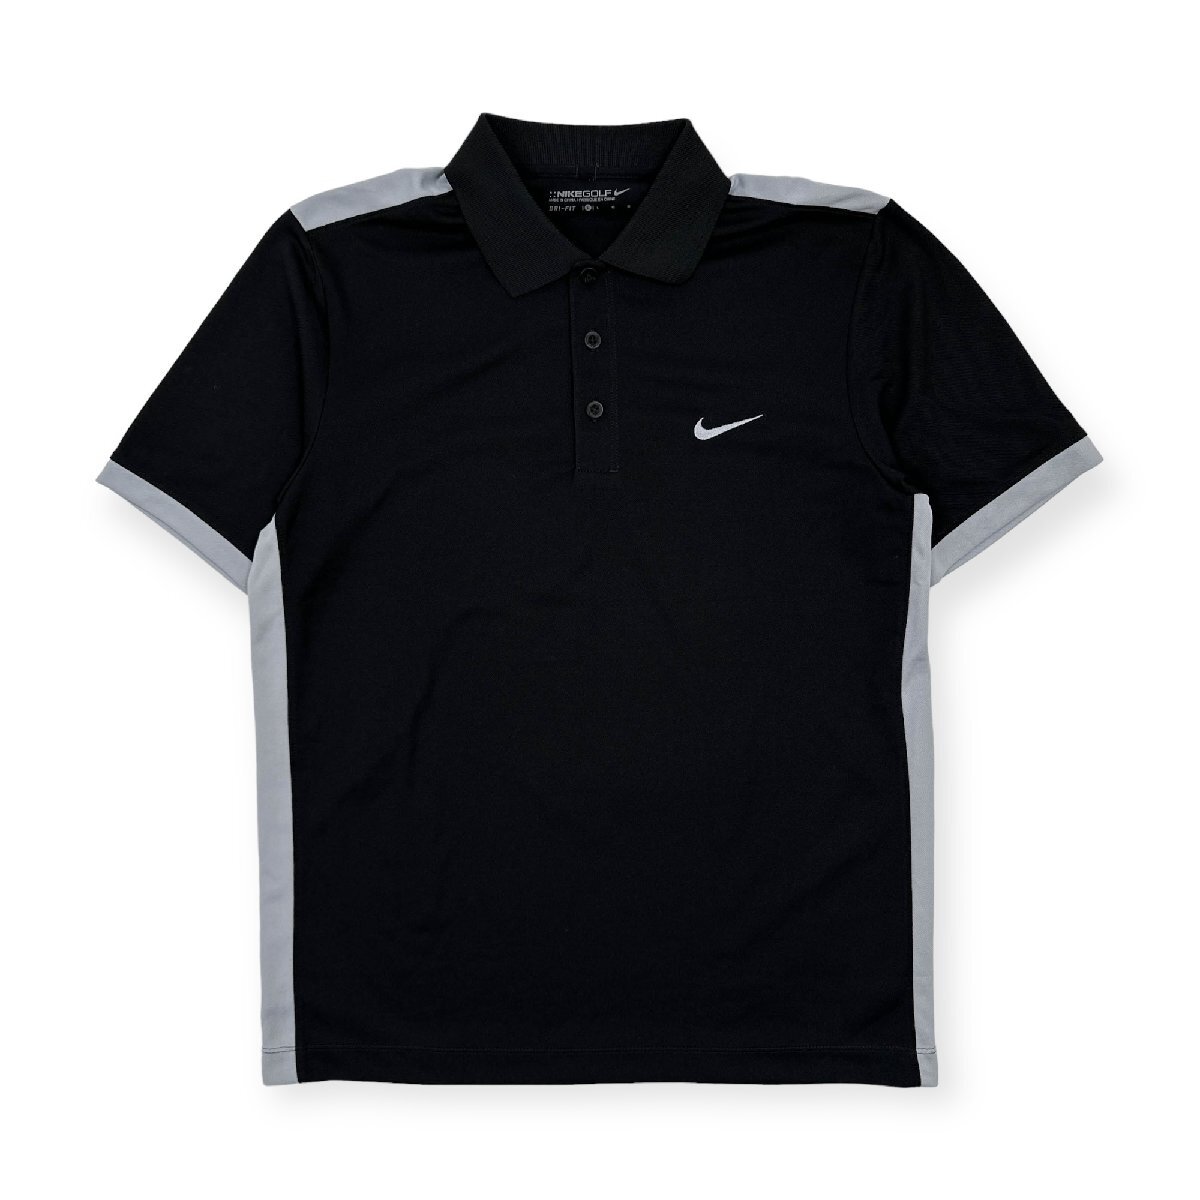 NIKE GOLF ナイキ ゴルフ DRI-FIT ロゴ刺繍 半袖 ドライ ポロシャツ Lサイズ /黒 ブラック メンズ スポーツ_画像1